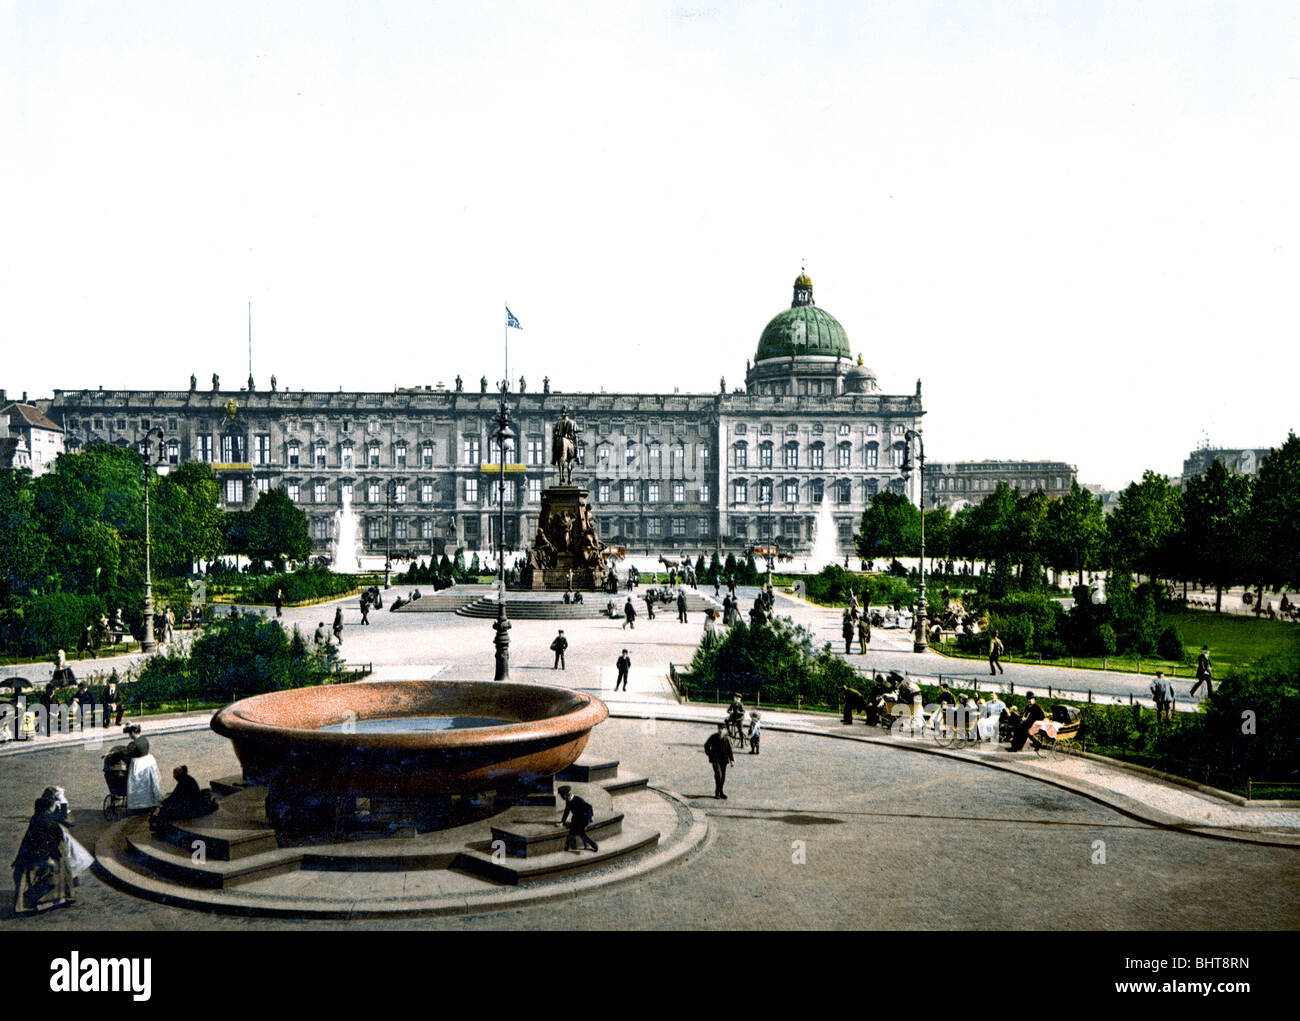 Königlicher Palast Und Lustgarten Berlin Stockfoto